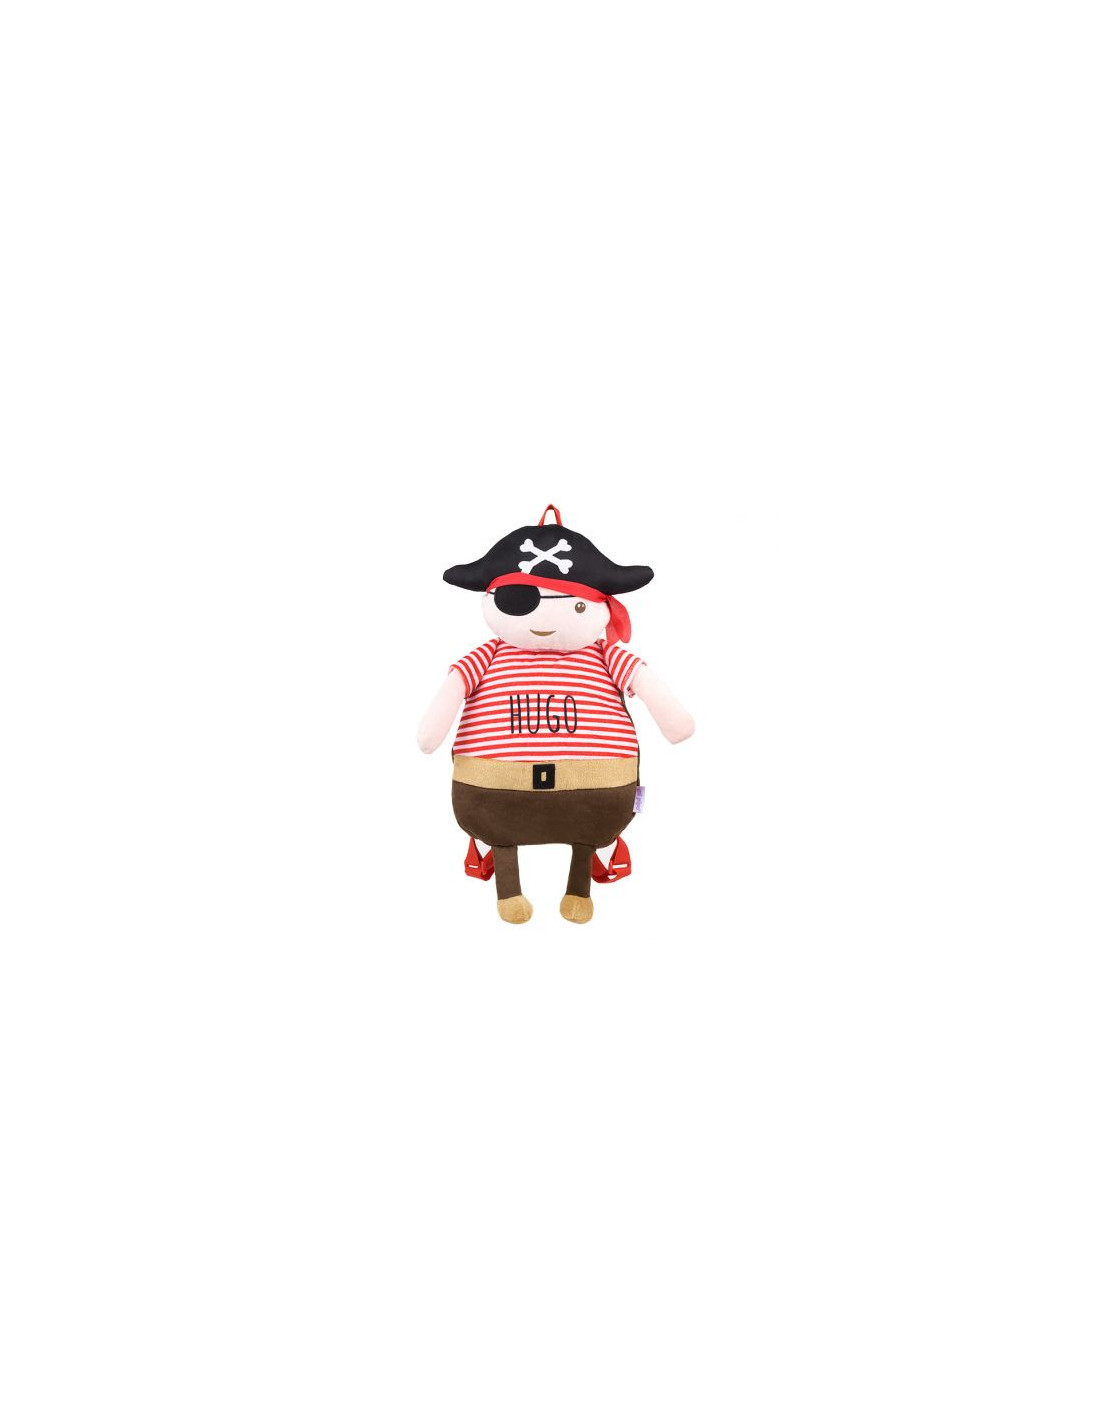 Mochila para bebé niño personalizada y con dibujo de un pirata.